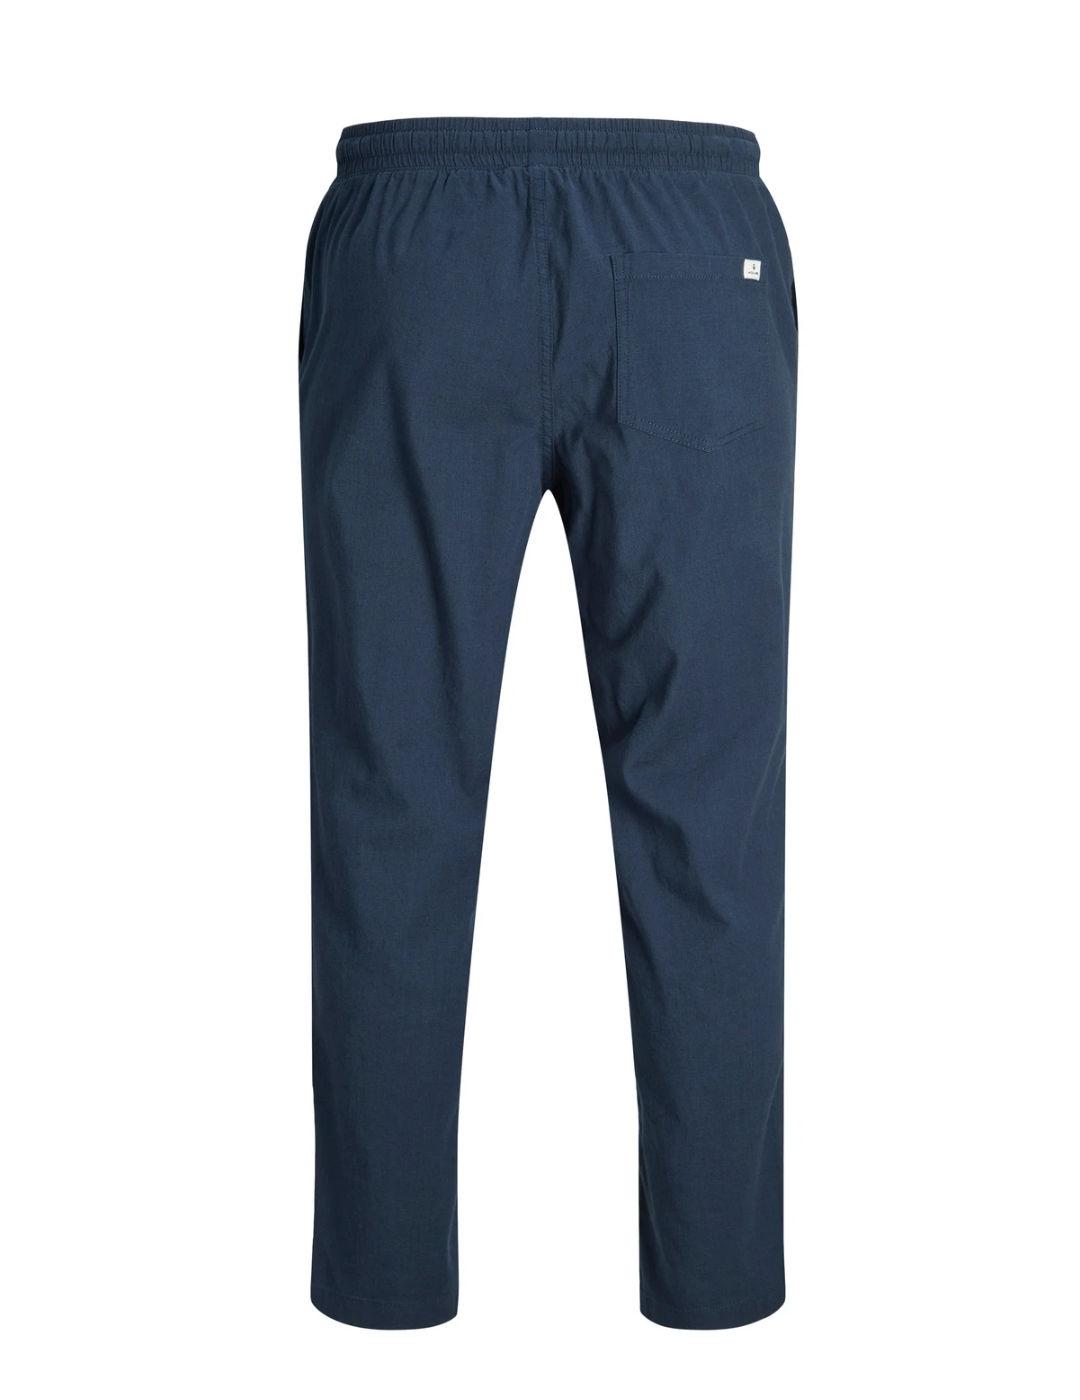 Pantalón Jack&Jones Stace azul marino de lino para hombre